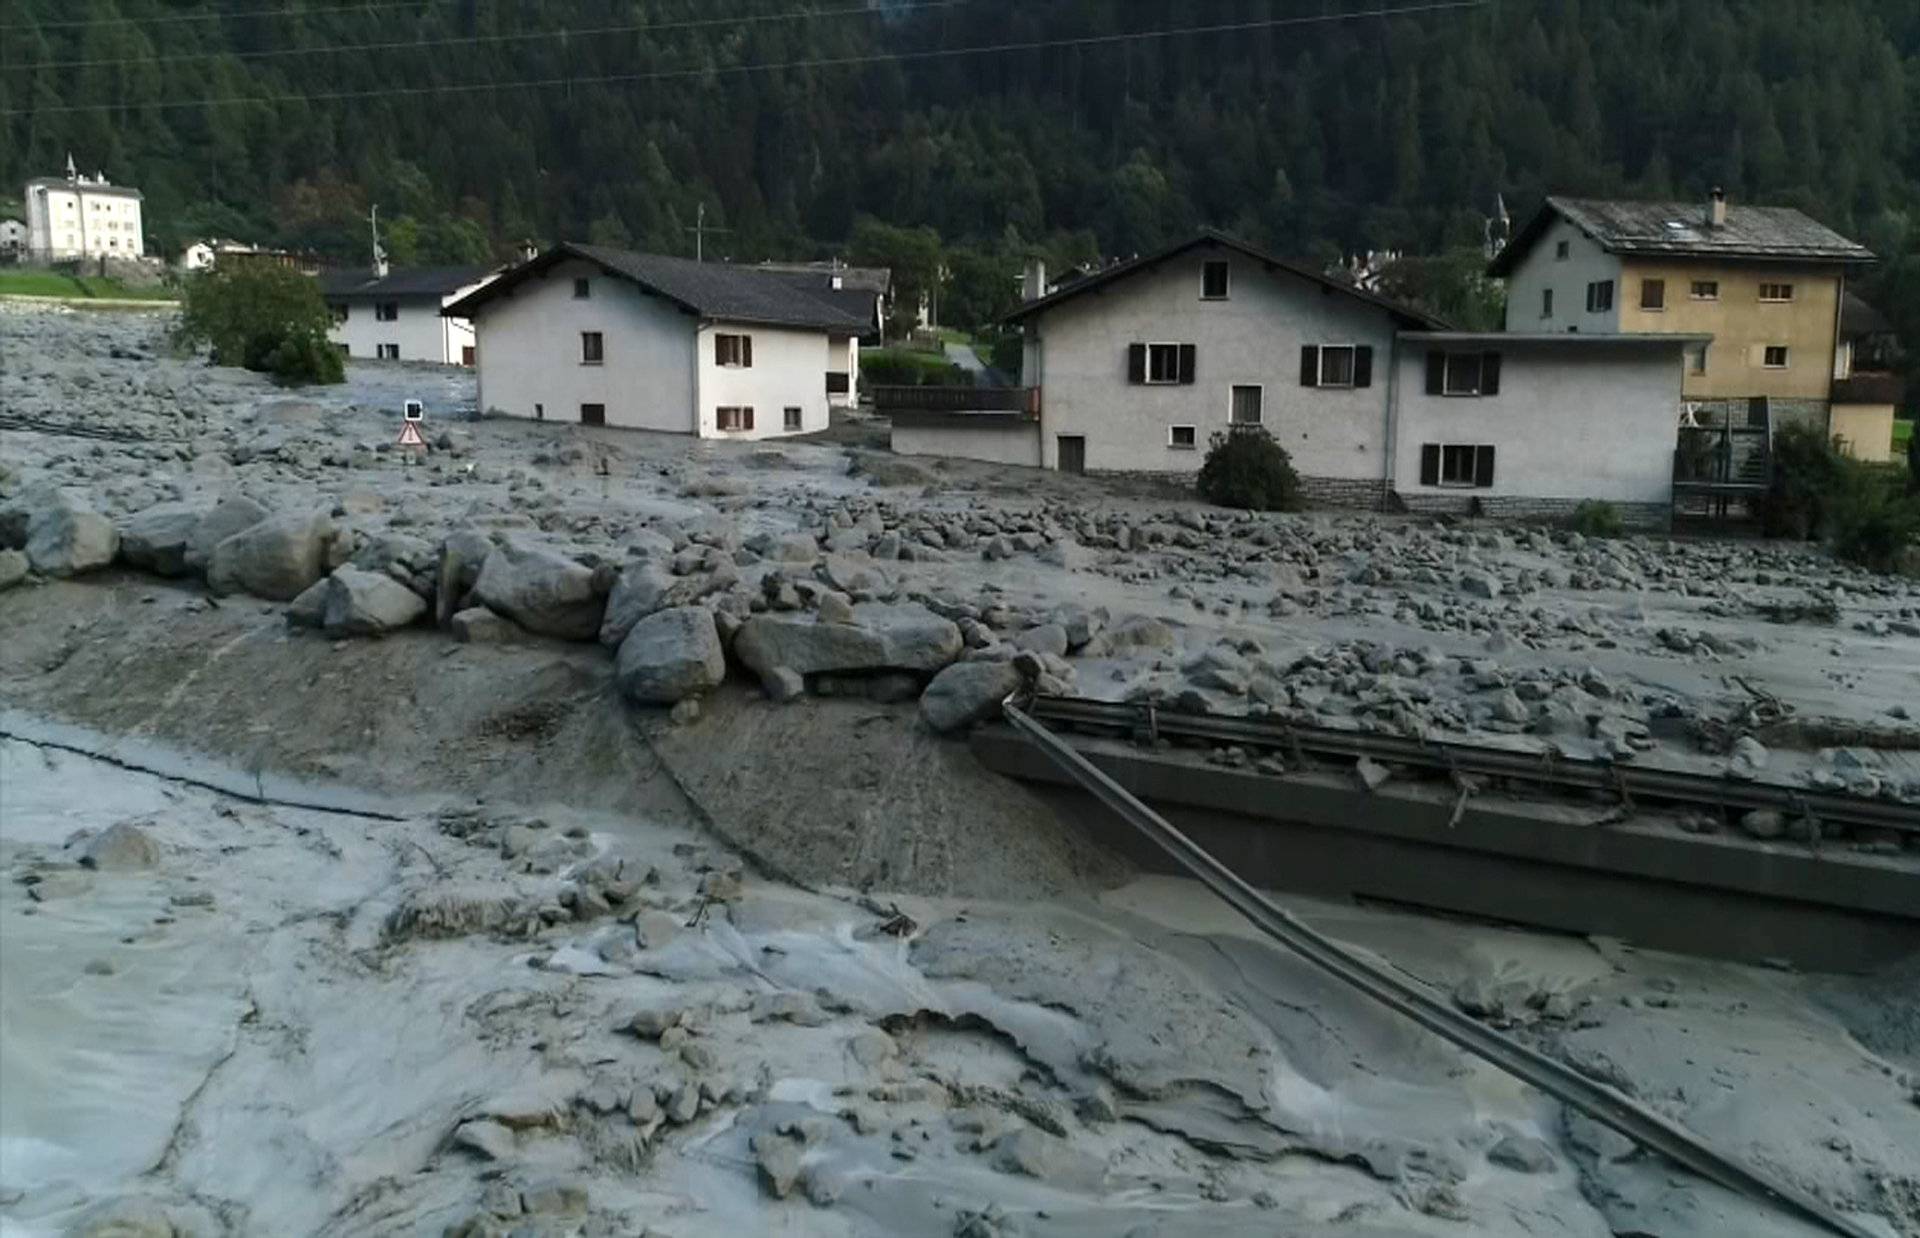 Still image taken from video shows the remote village Bondo in Switzerland